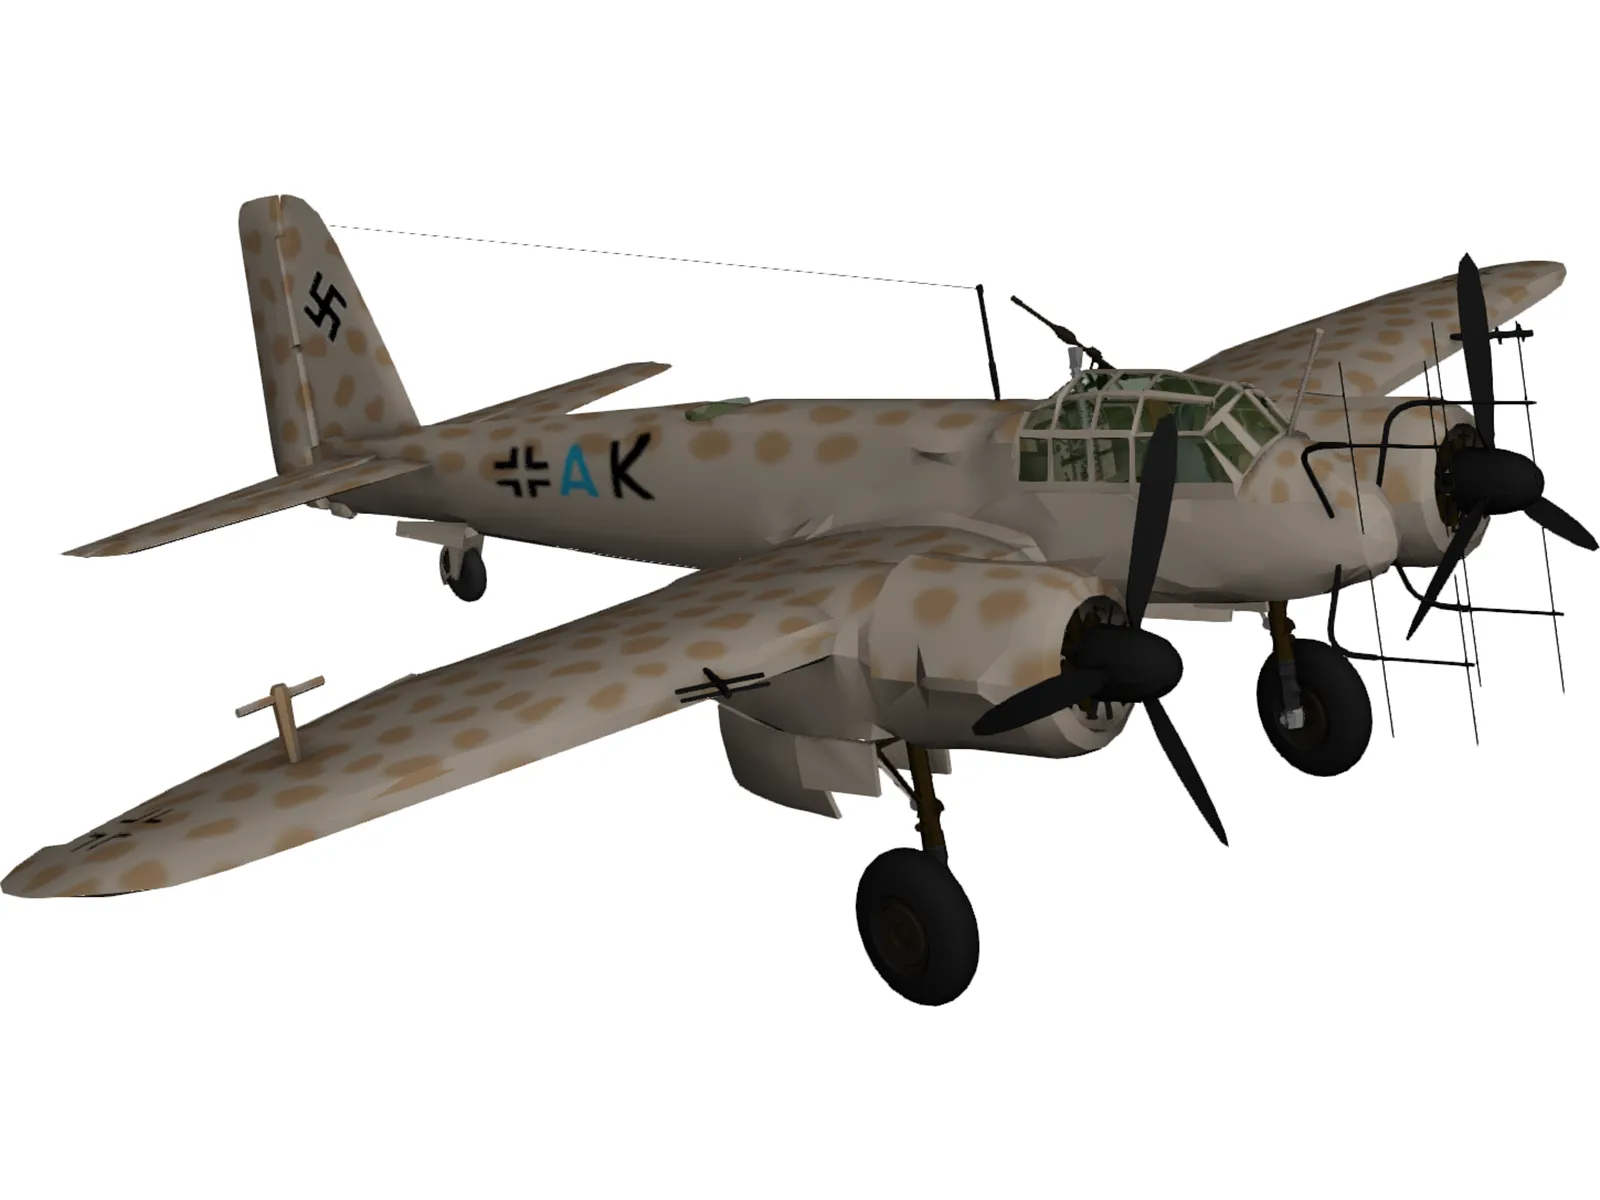 Junkers Ju 88 3D Model